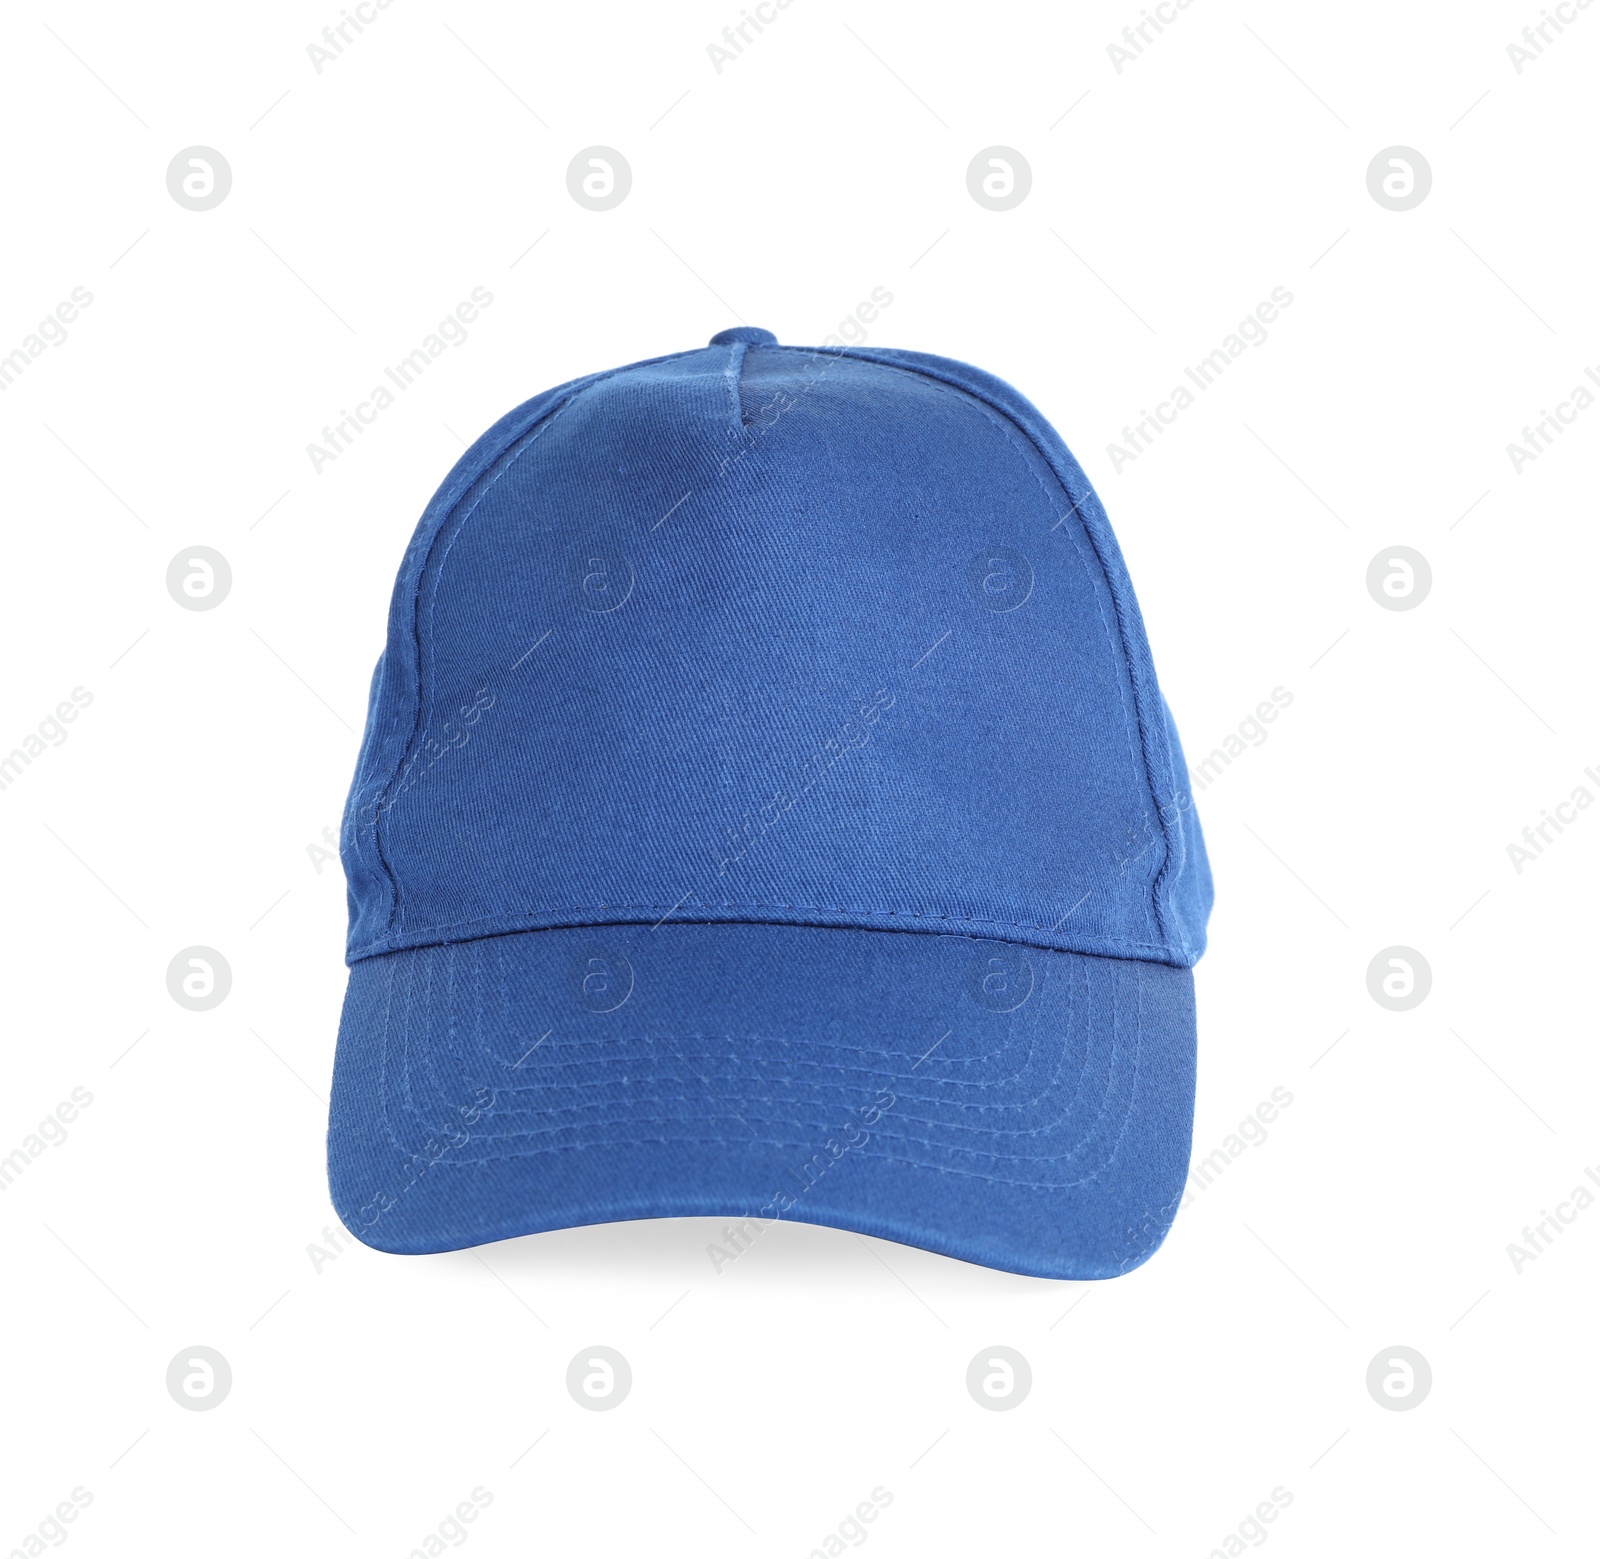 Photo of Stylish blue baseball cap isolated on white